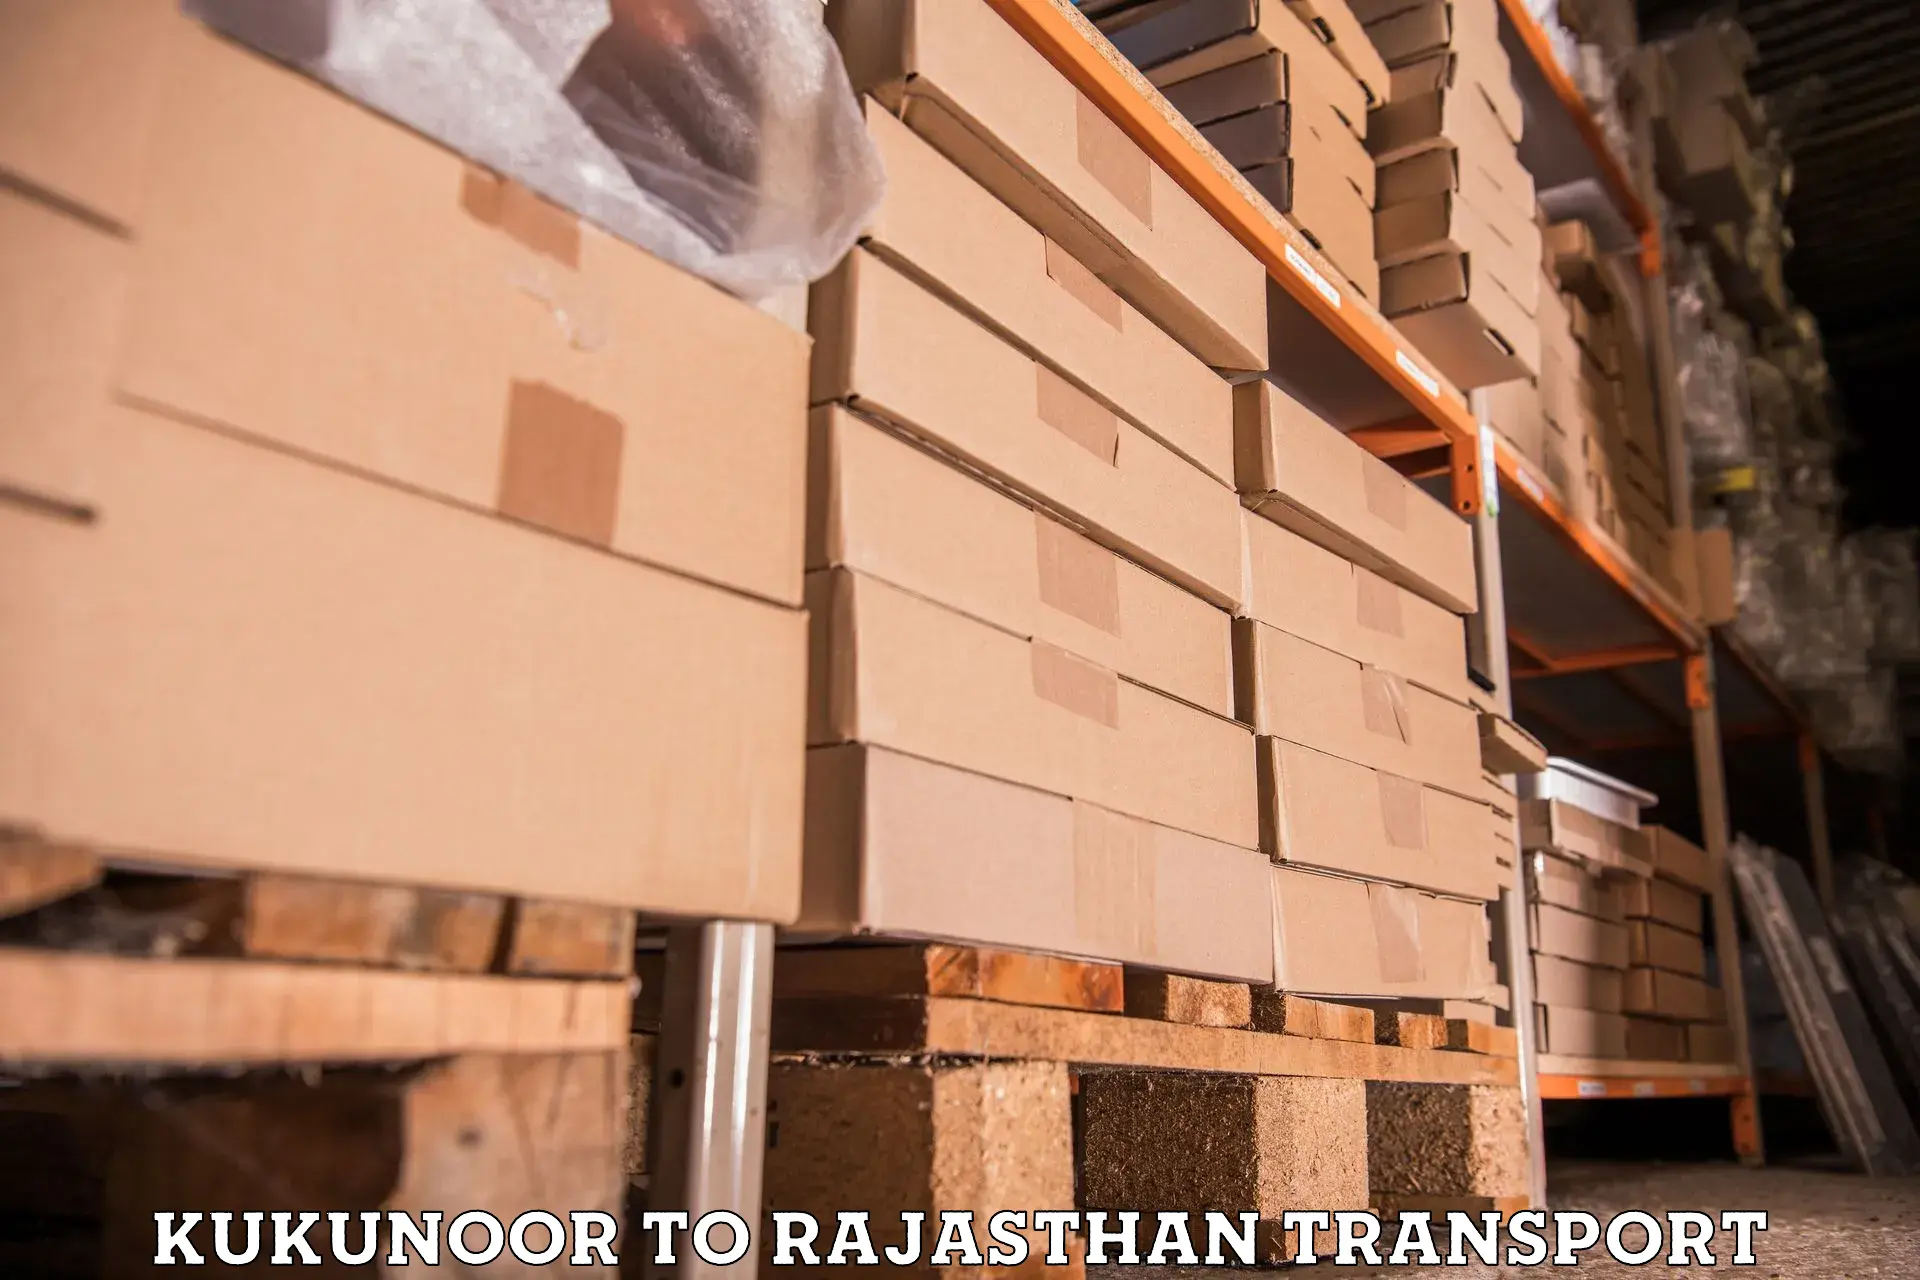 Commercial transport service Kukunoor to Bhadra Hanumangarh